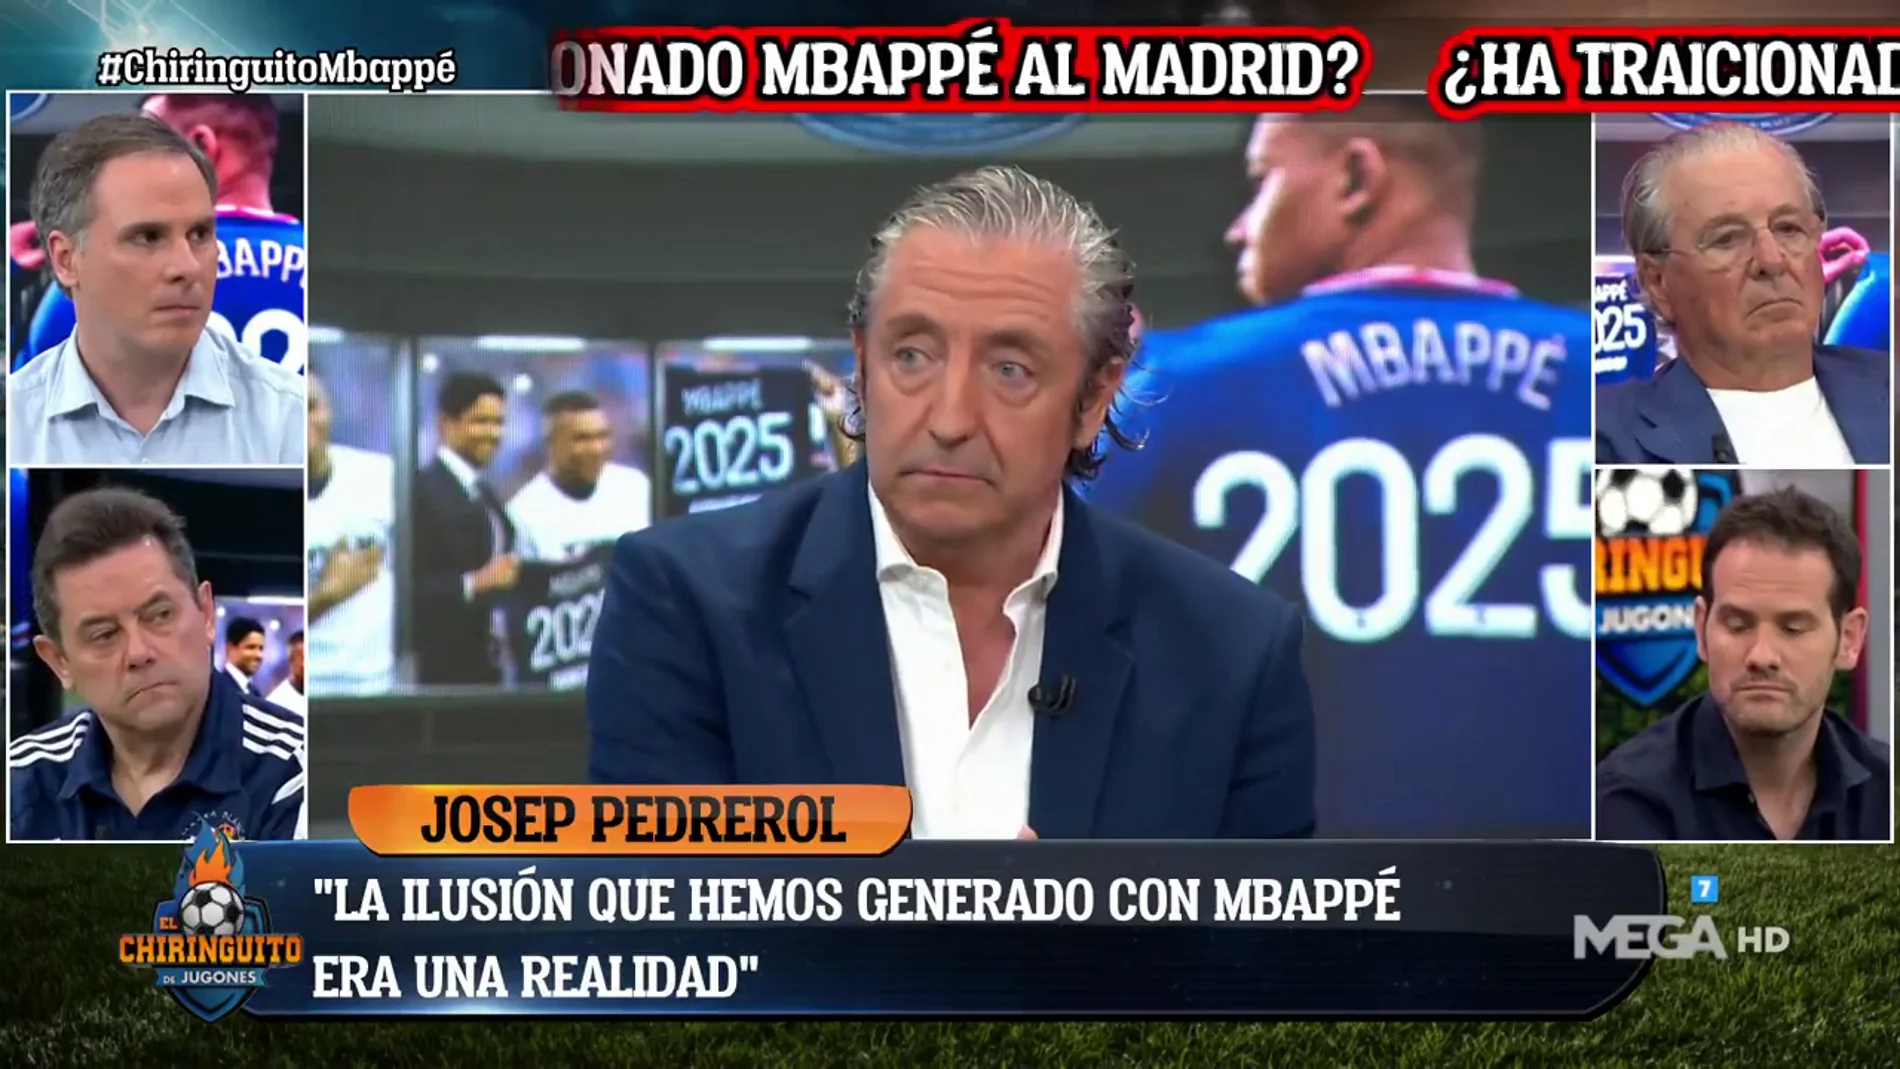 Josep Pedrerol: "La ilusión que hemos generado con Mbappé era una realidad"